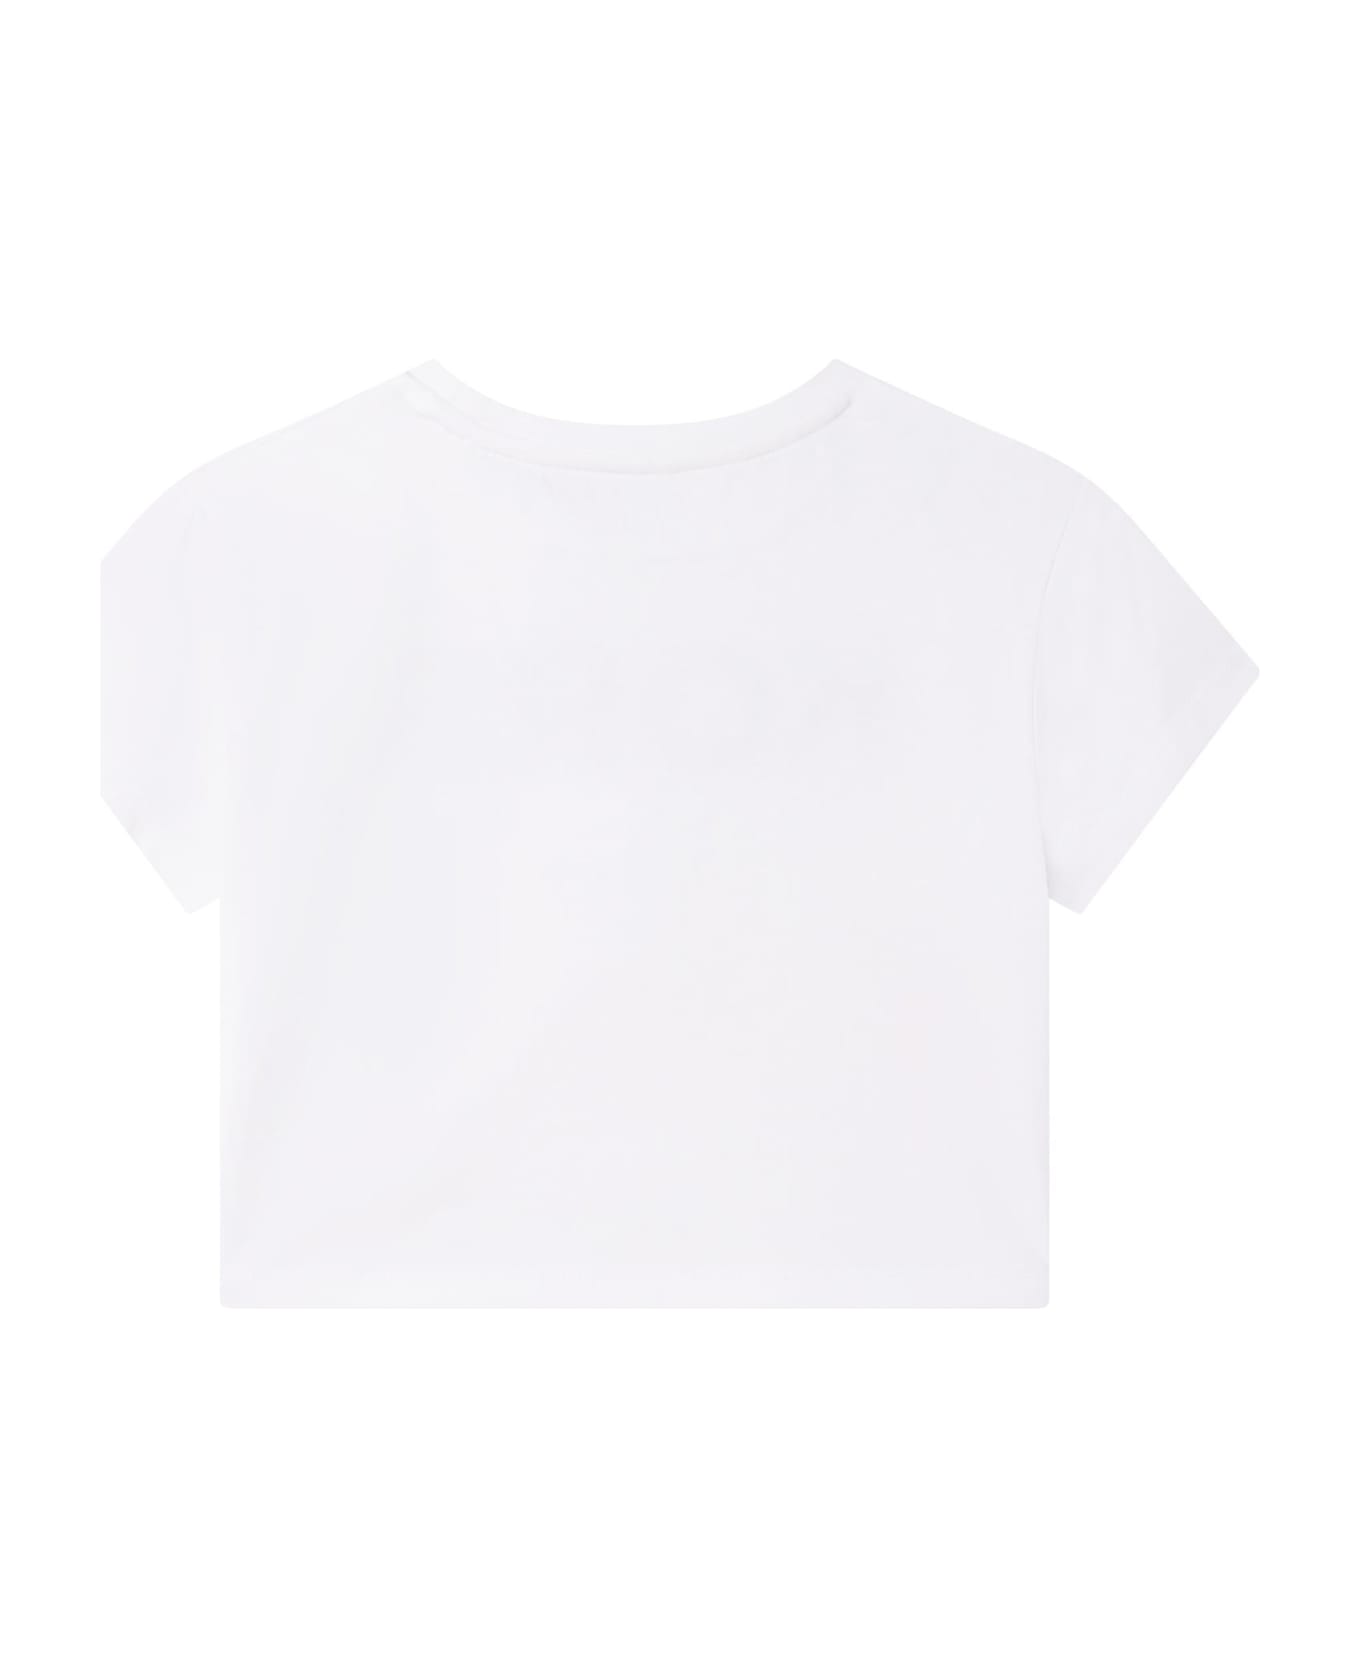 Michael Kors Printed T-shirt - Bianco Giallo